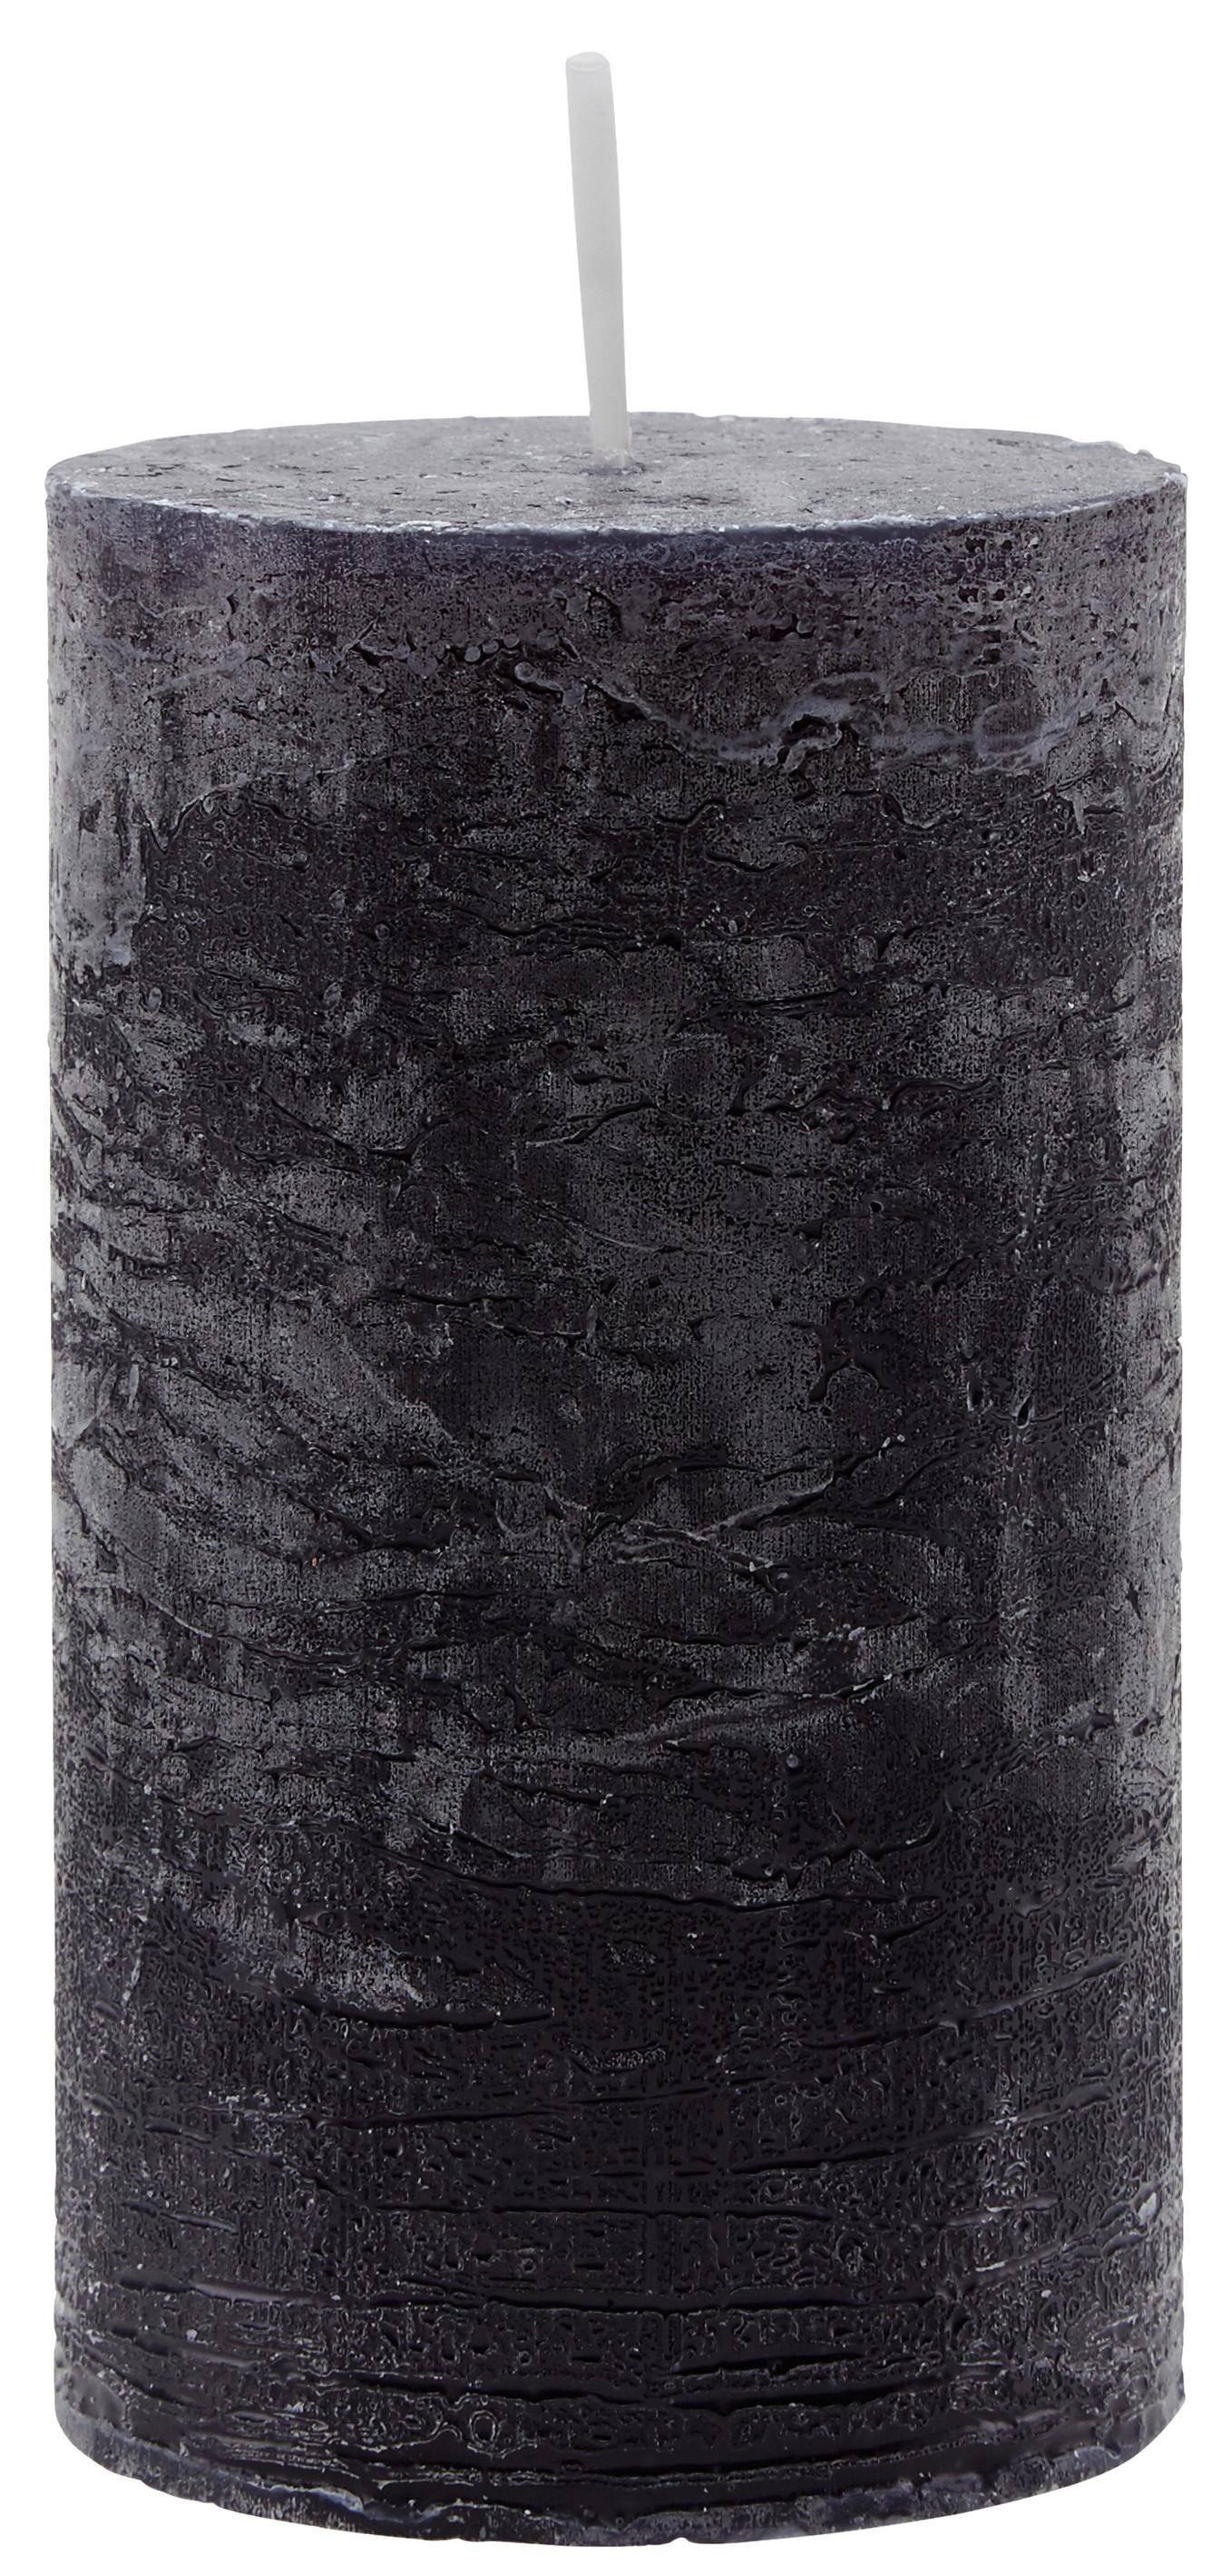 Válcová Svíčka Lia - černá, Moderní (6,8/12cm) - Premium Living